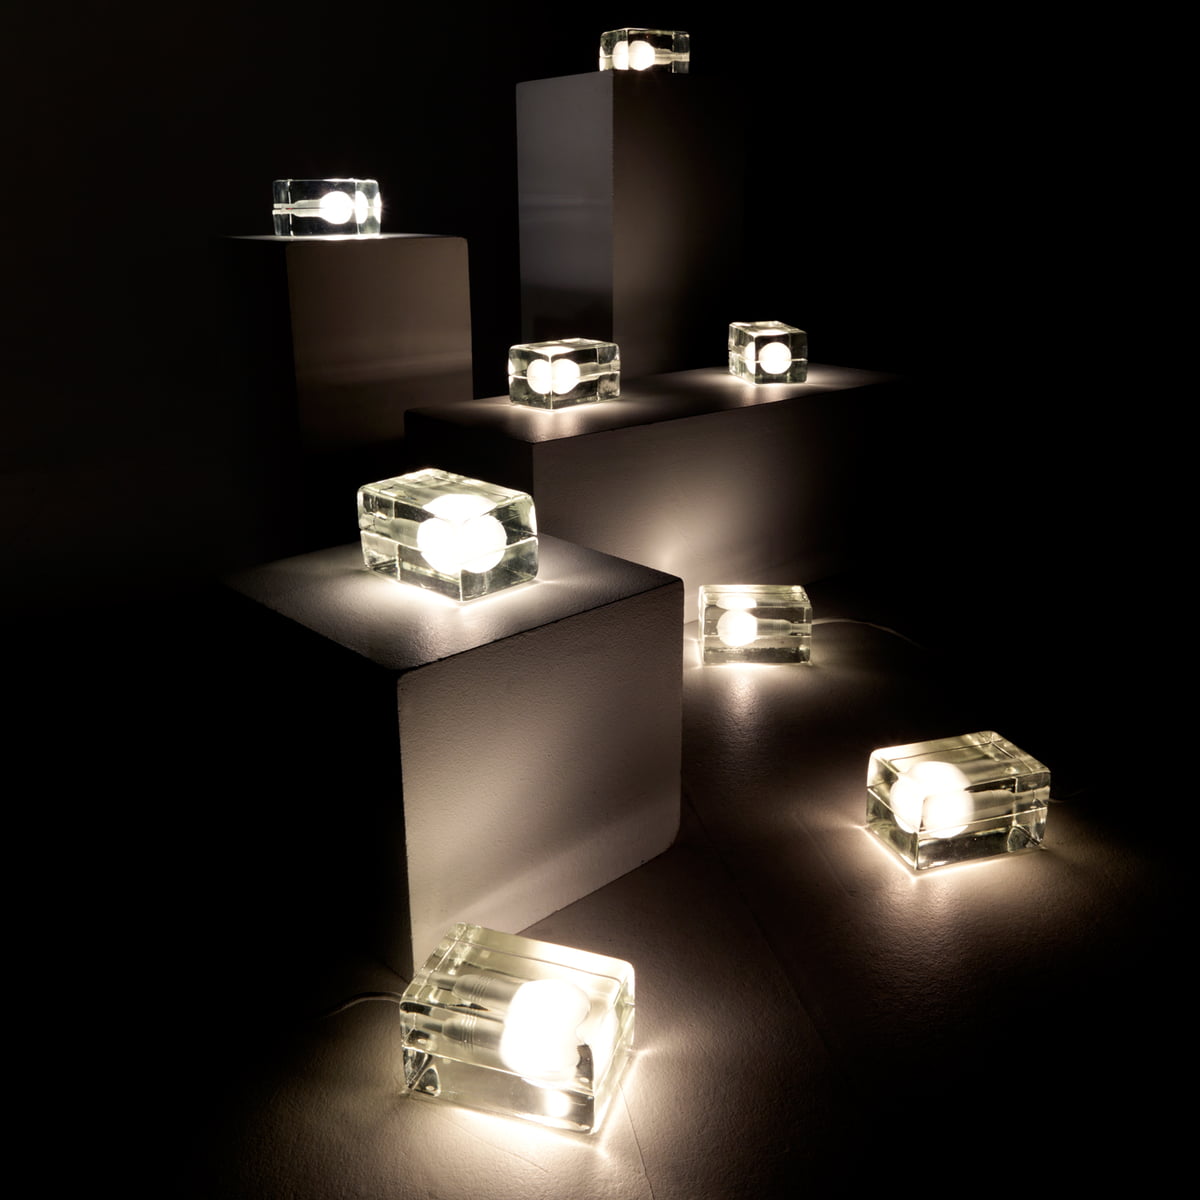 芬蘭設計師Harri Koskine 的經典設計燈具：Block Lamp 冰塊燈，一大堆冰塊燈放在一起還挺壯觀，可是價格不便宜